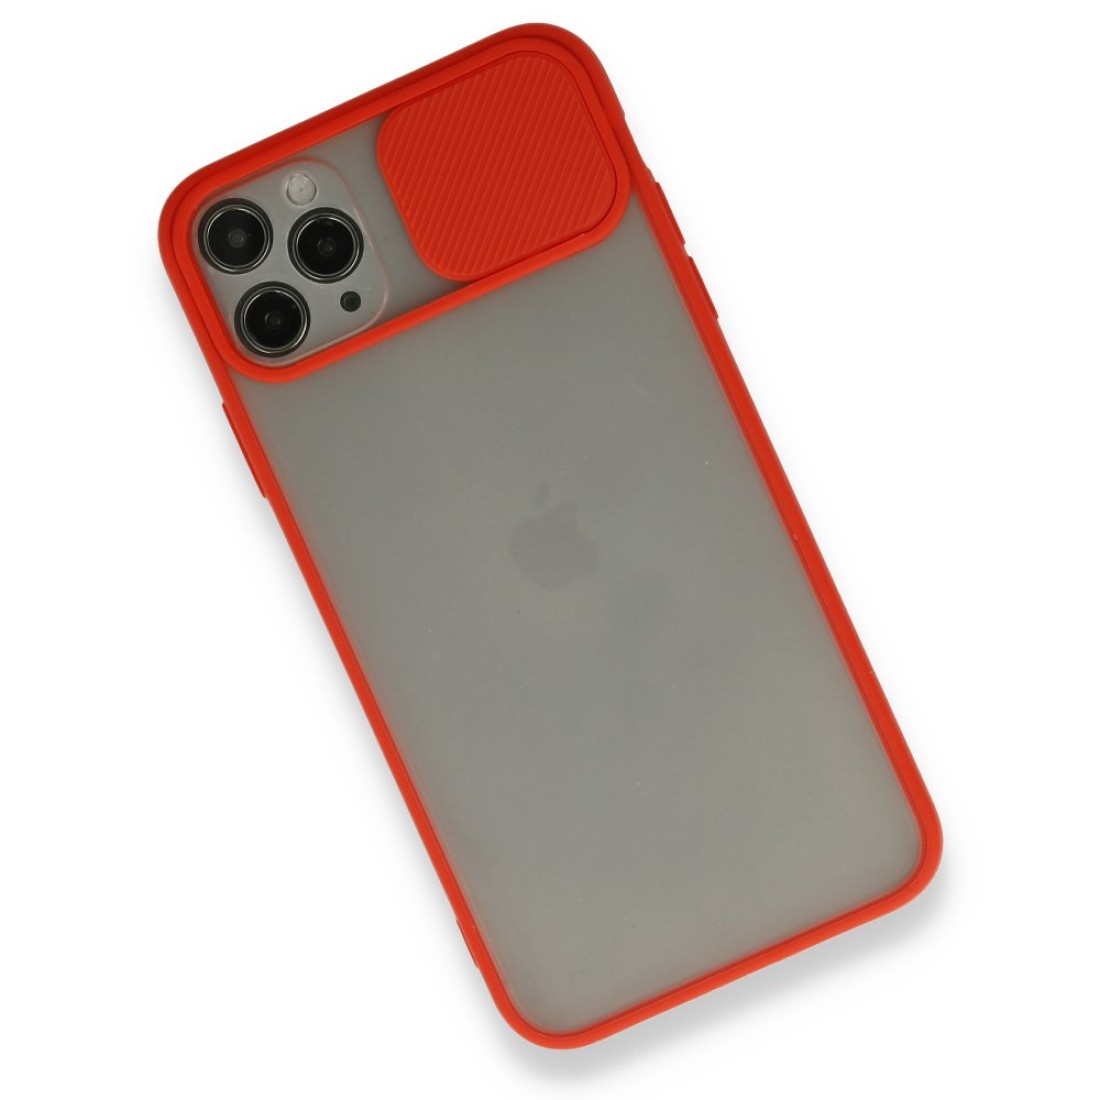 Apple iPhone 11 Pro Max Kılıf Palm Buzlu Kamera Sürgülü Silikon - Kırmızı